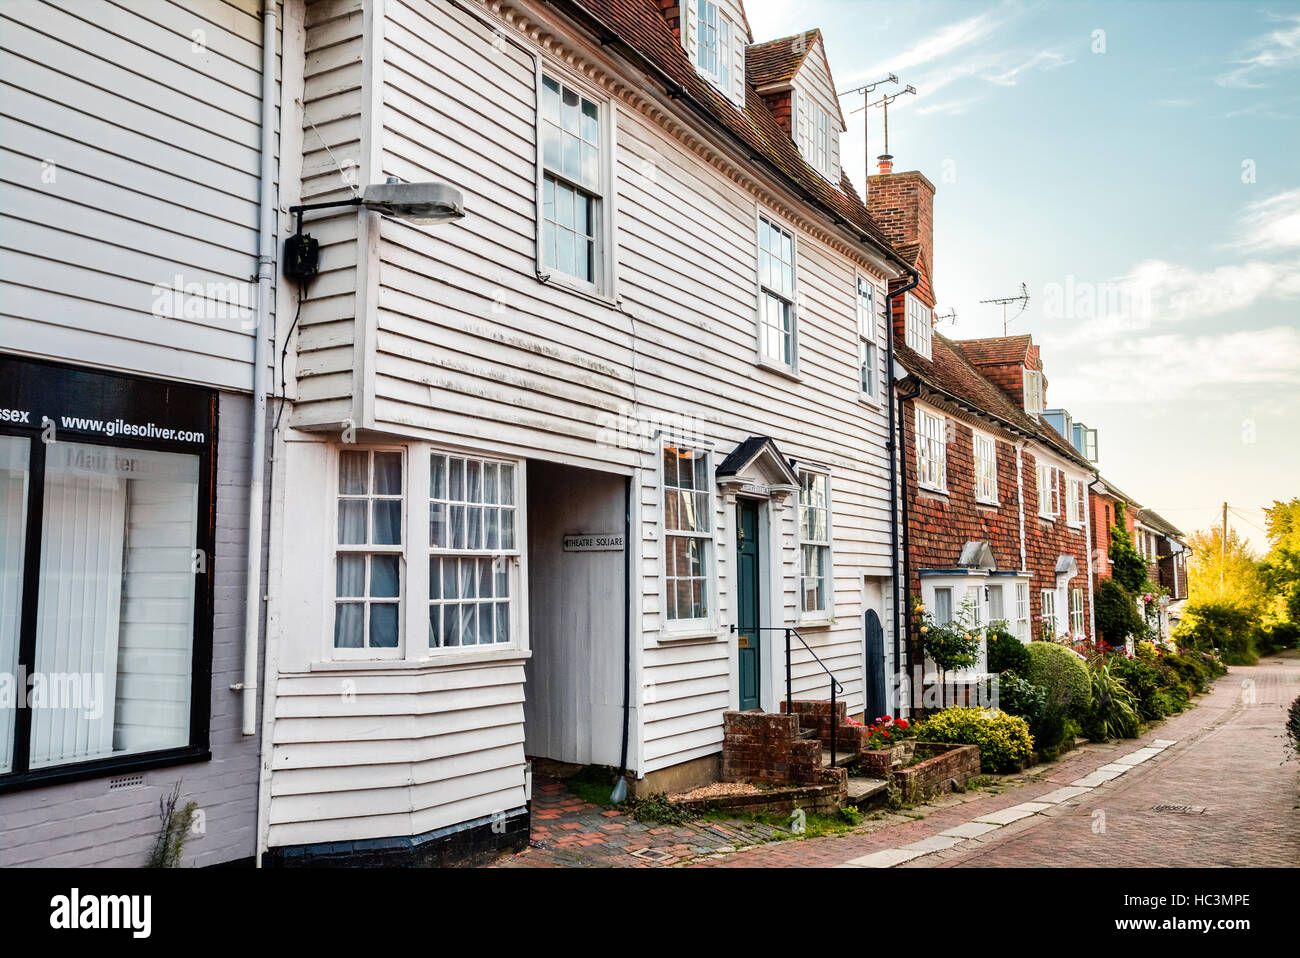 L'Angleterre, Tenterden. Lane avec blanc tableau météo, en bois datant du 18ème siècle, 'Théâtre' Cottage, avec 19e siècle cottages en arrière-plan. Banque D'Images